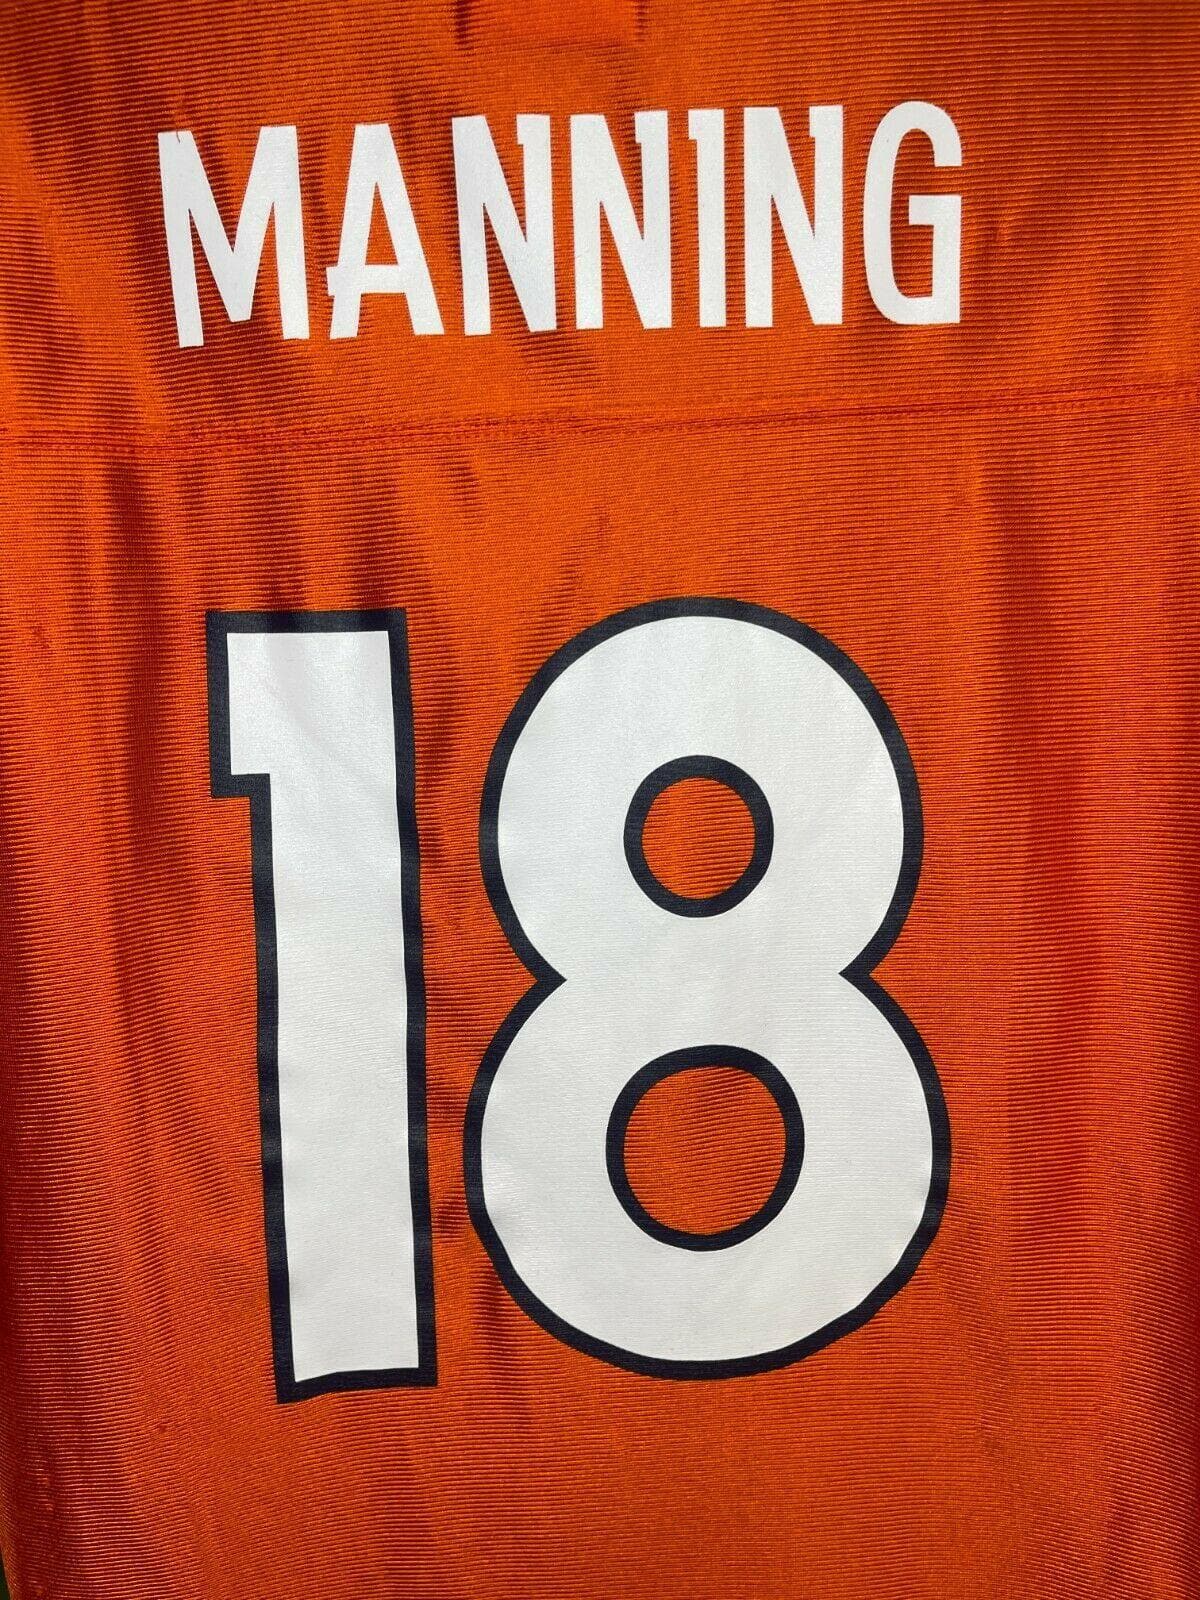 NFL Denver Broncos Peyton Manning #18 Jersey Youth 2X-Large 20 (42")